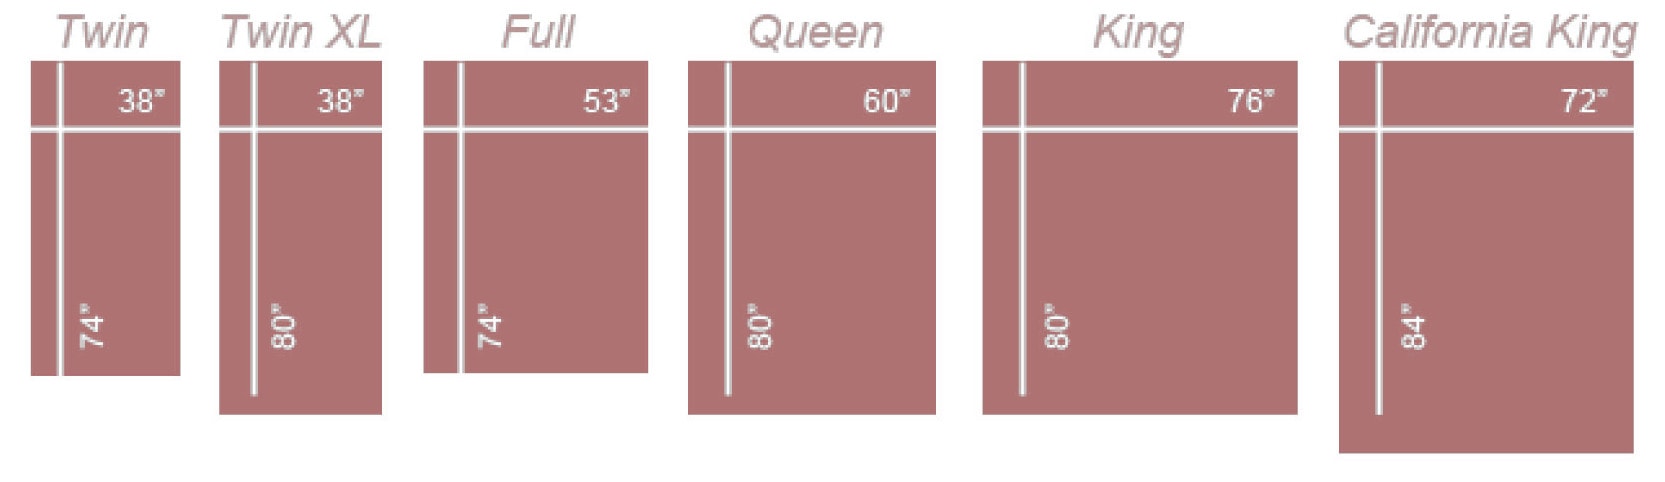 mattress size chart